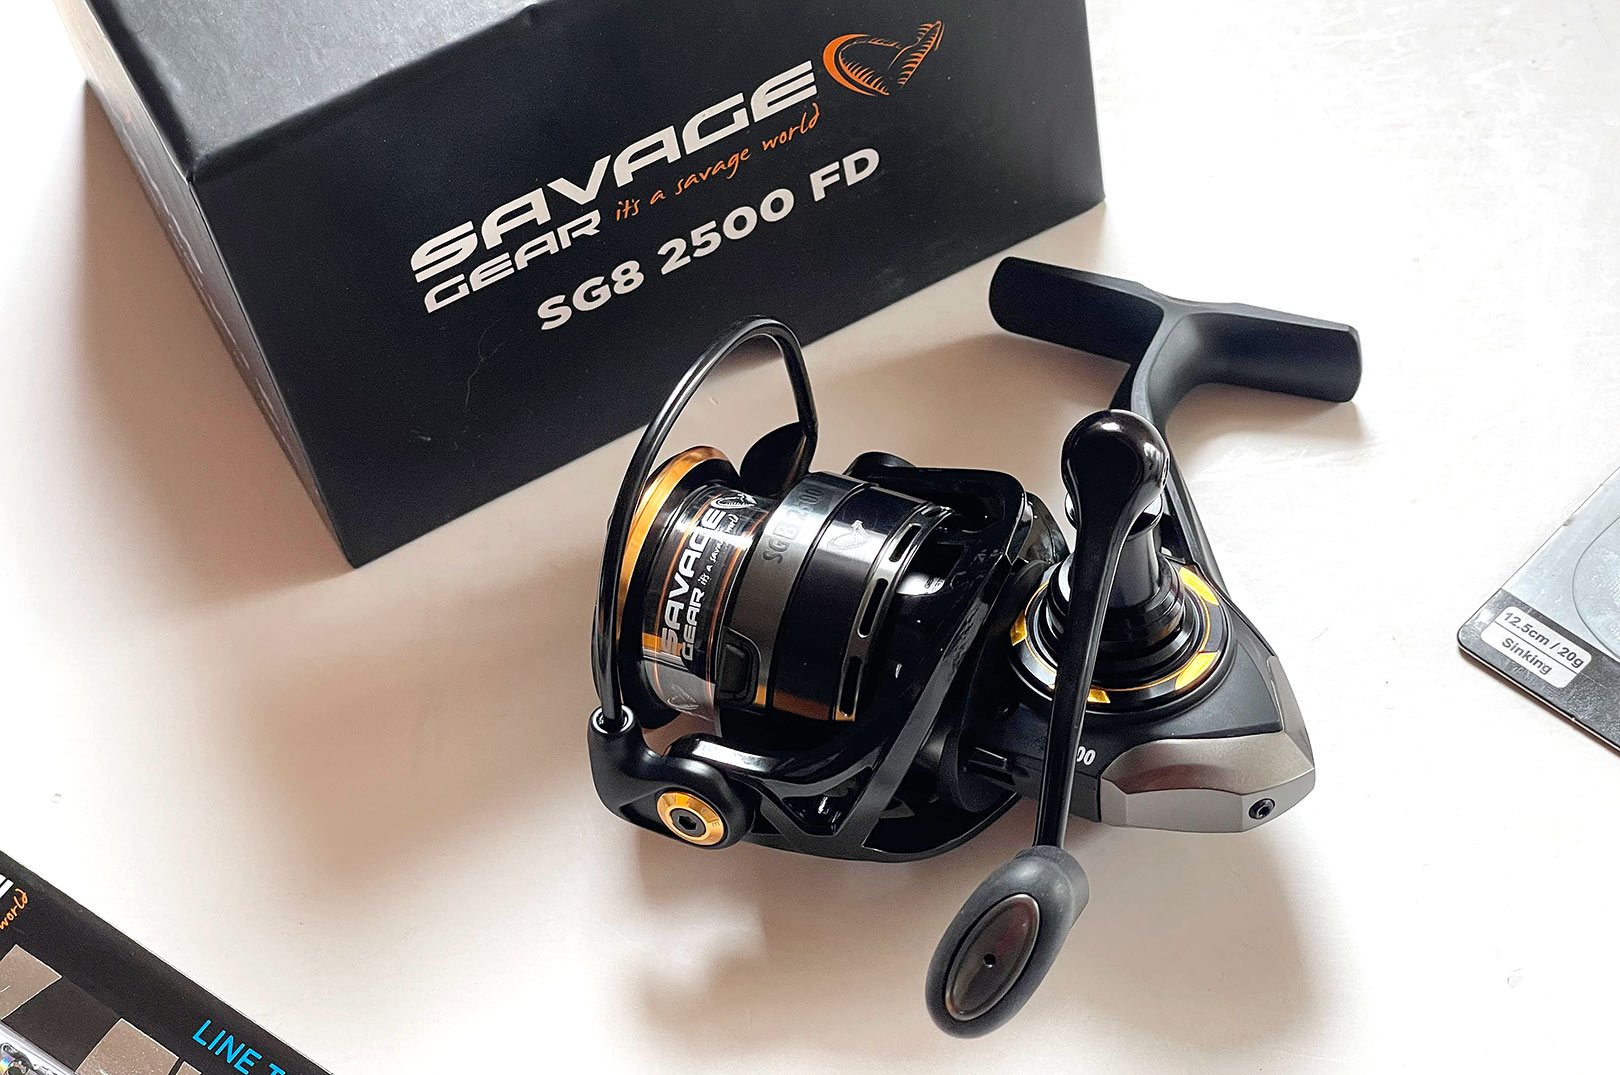 Udover en masse fede kystagn - blan Sandels, Zerlings og Nails - modtager vinderen dette lækre SG8 2500 FD kysthjul fra Savage gear.